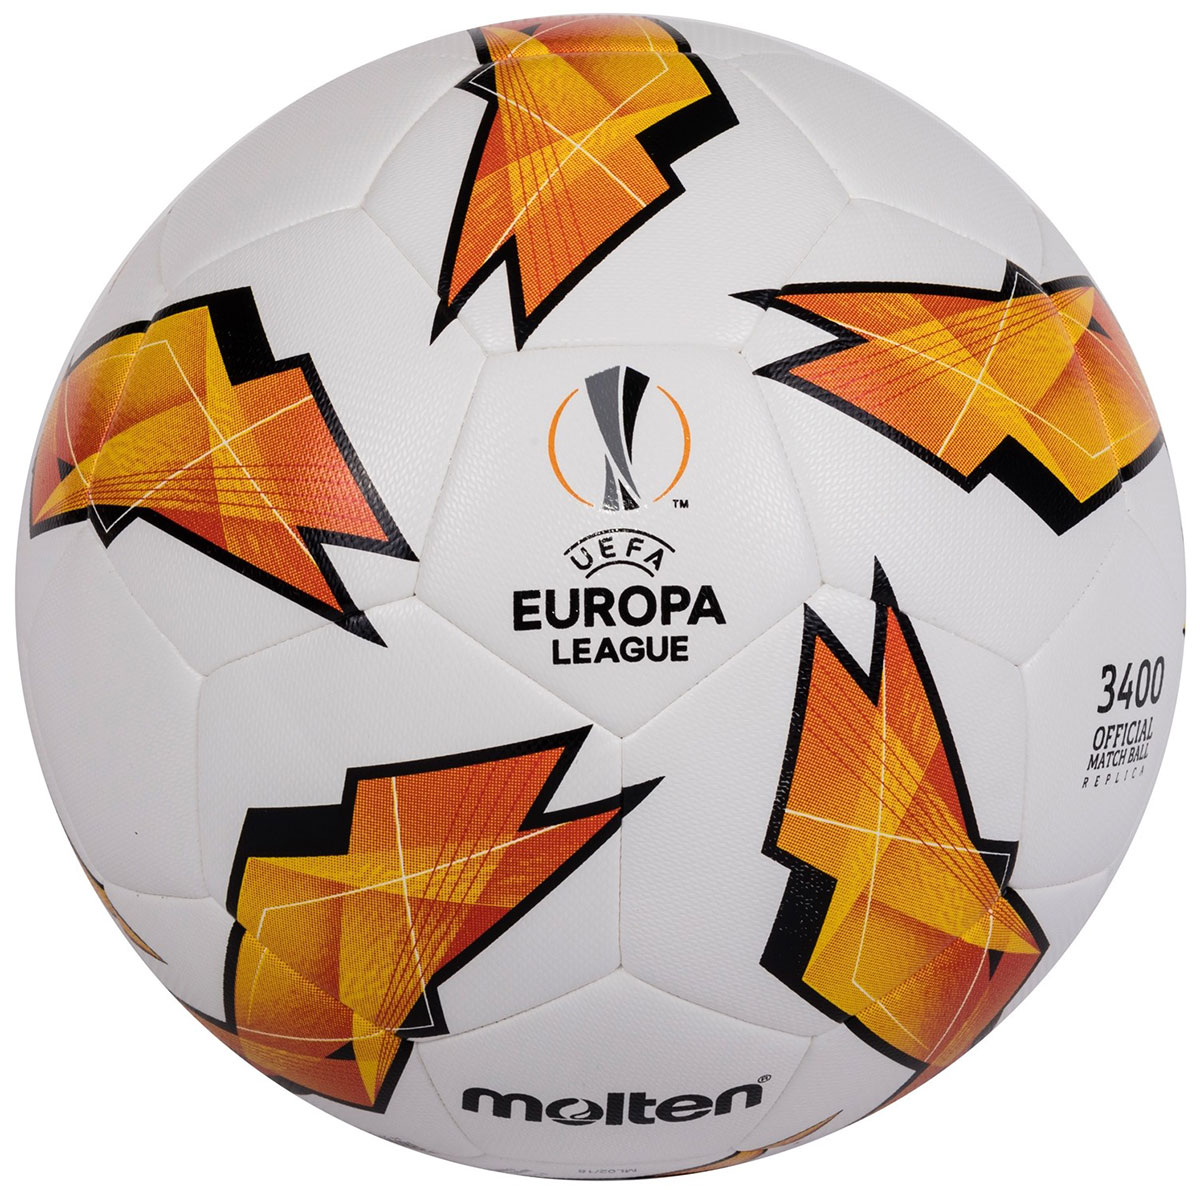 MOLTEN OFFICIAL MATCH BALL REPLICA OF THE UEFA EUROPA LEAGUE - 3400 MODEL